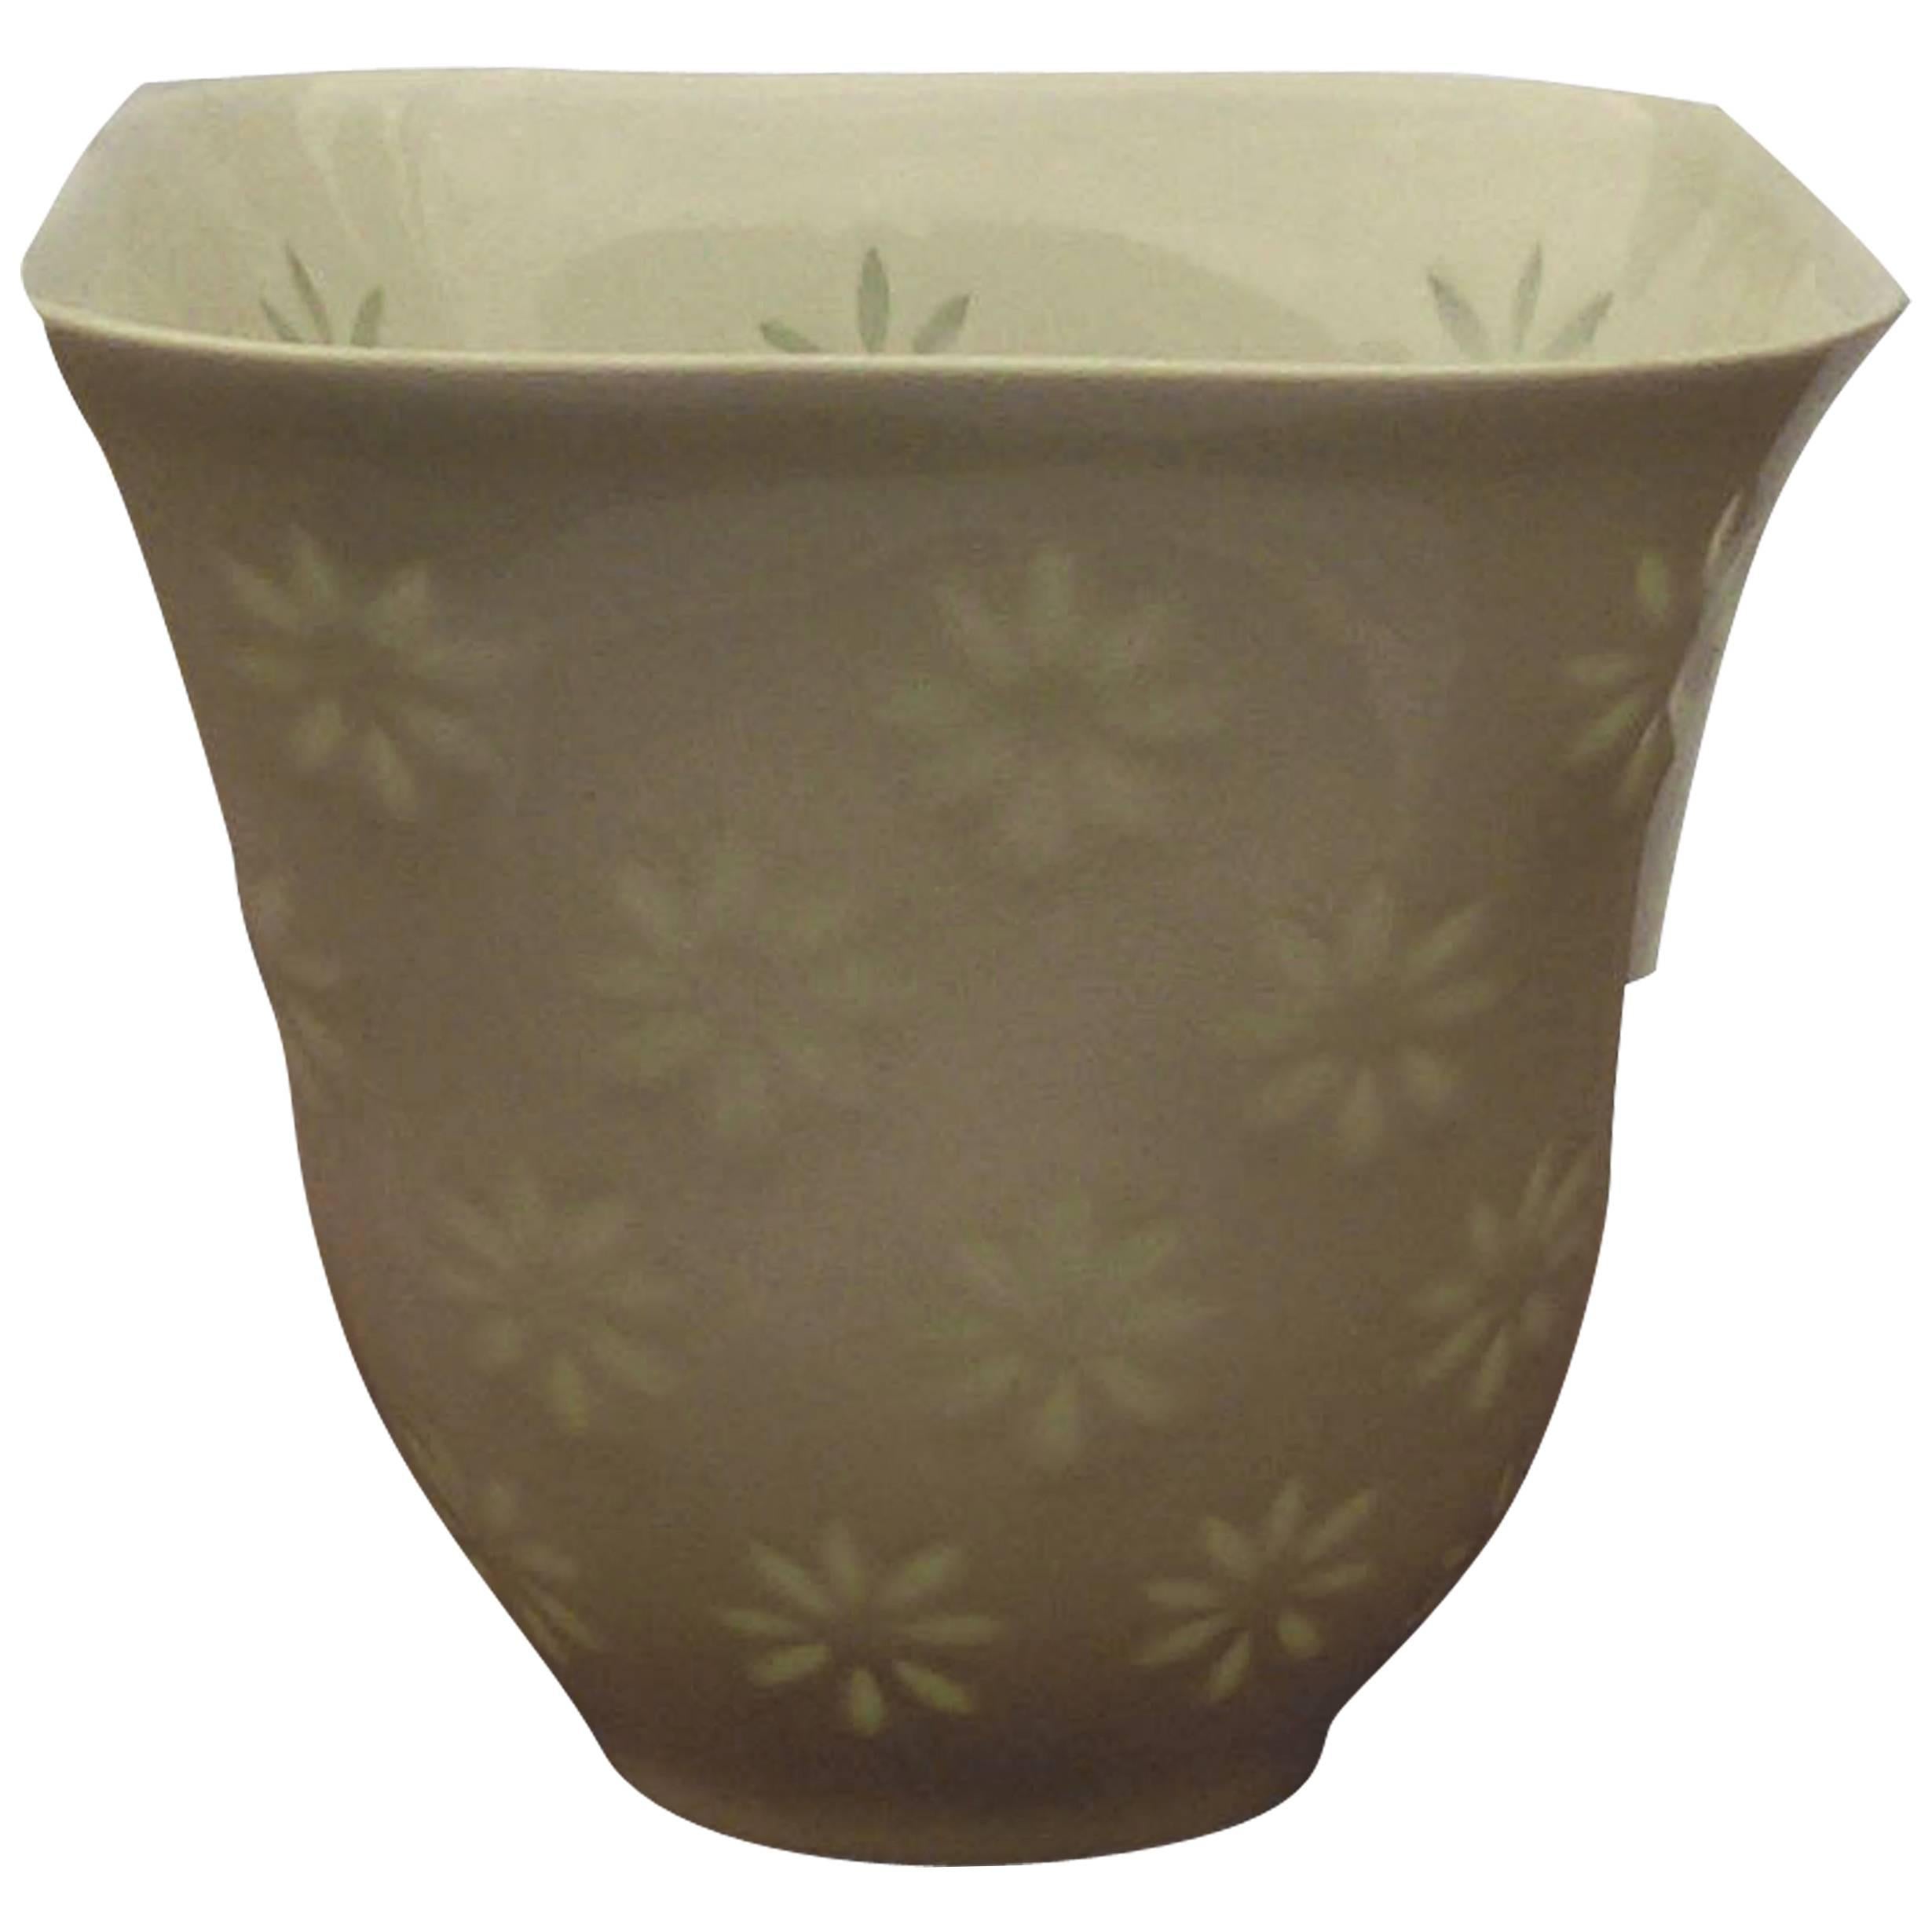 1960s Arabia Glazed White "Rice" Porcelain Vase by Friedl Holzer-Kjellberg